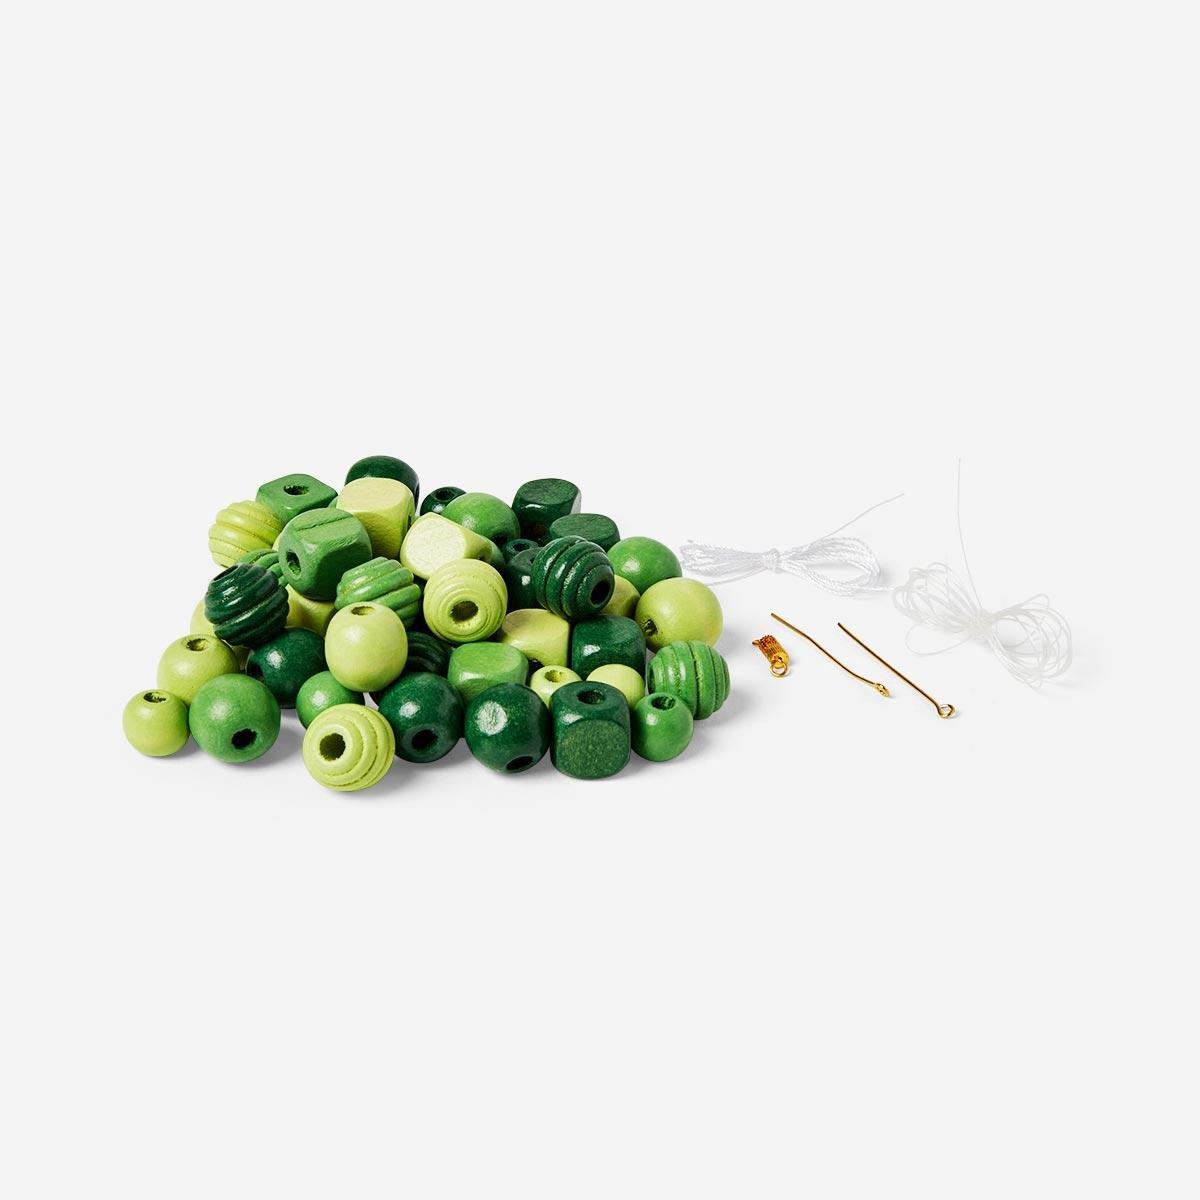 Green wooden beads